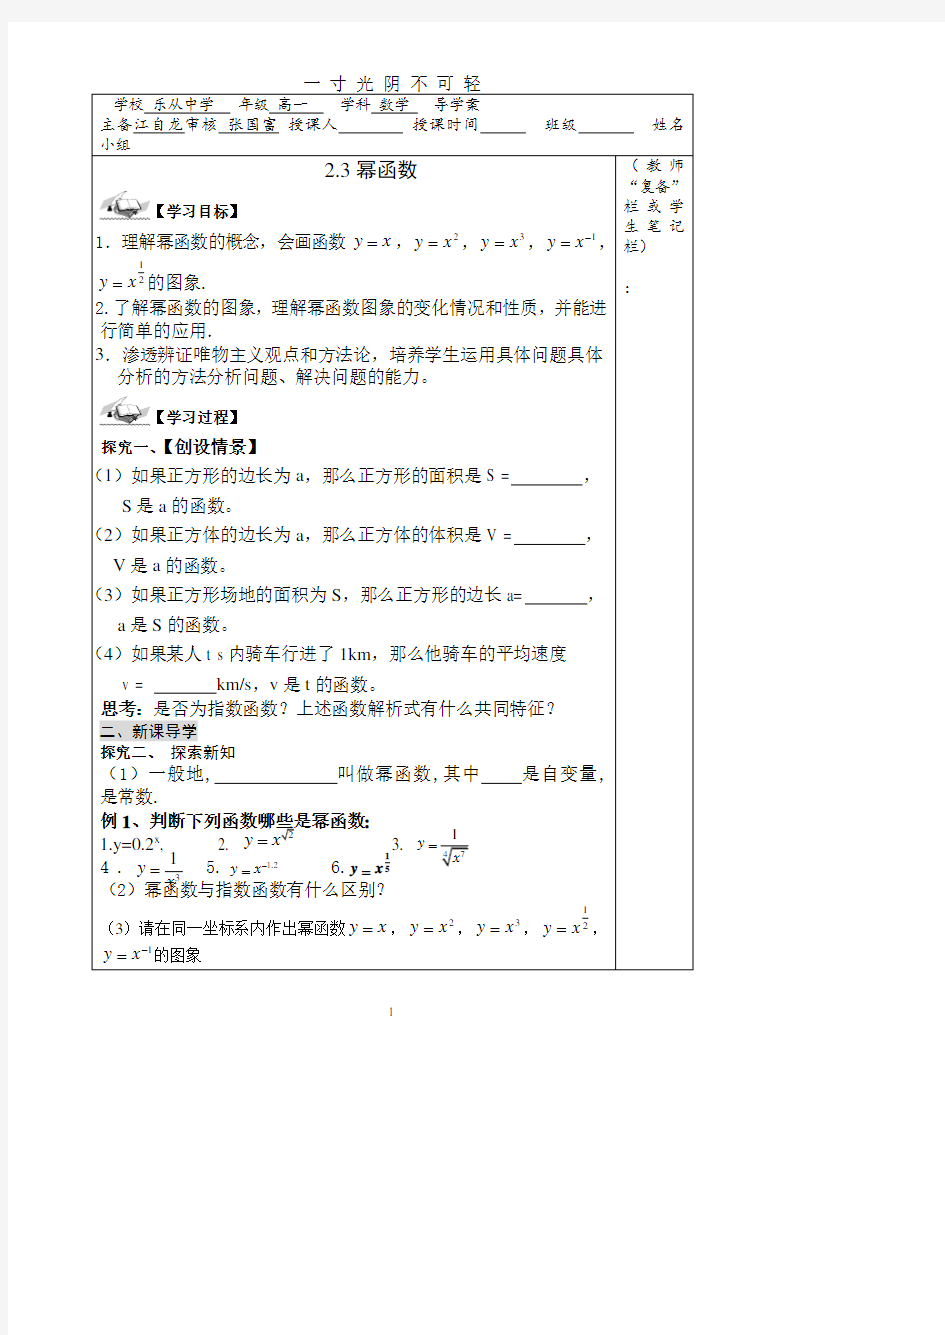 幂函数导学案(江自龙).pdf